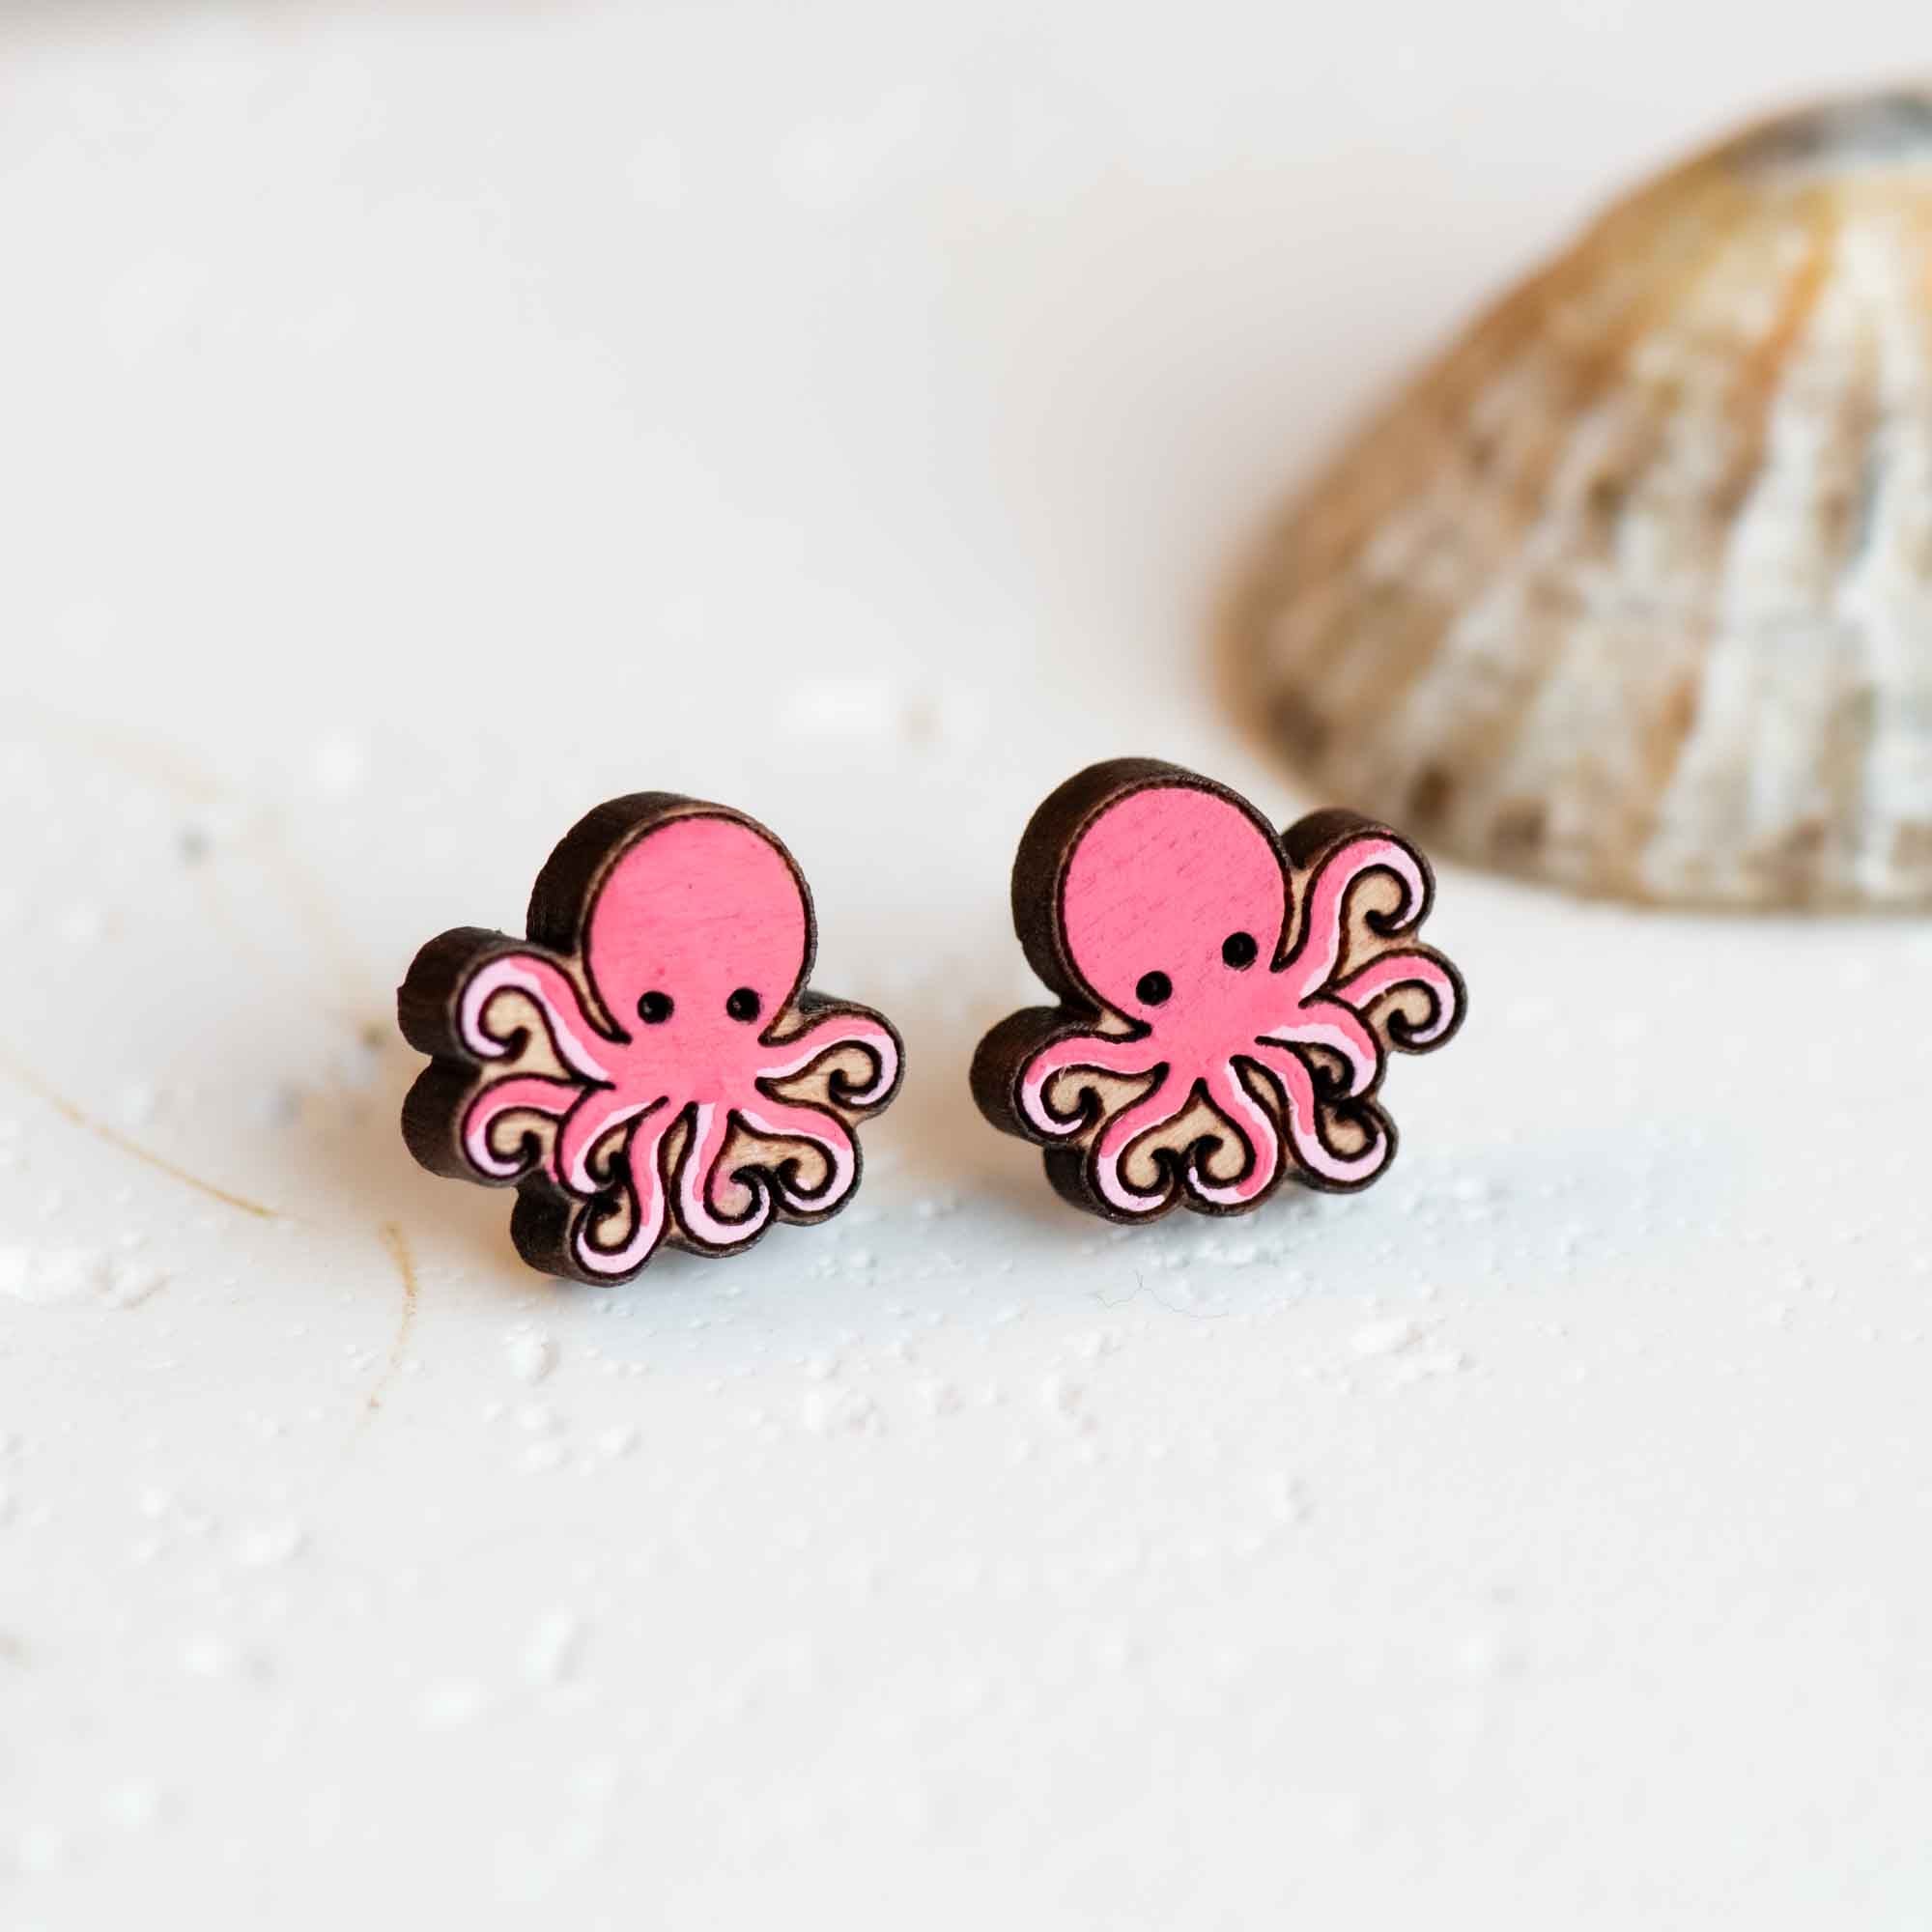 octopus stud earrings wooden earrings